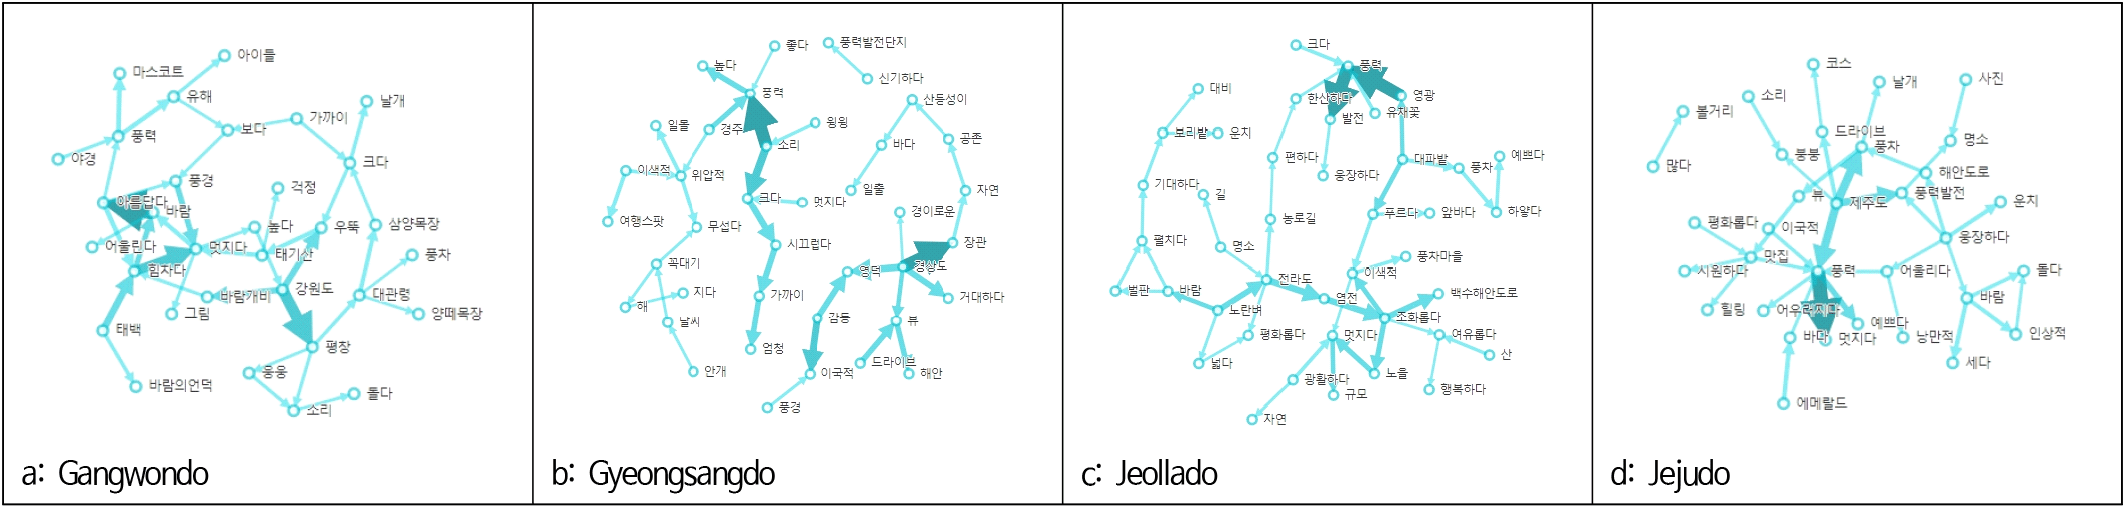 jkila-50-5-69-g2